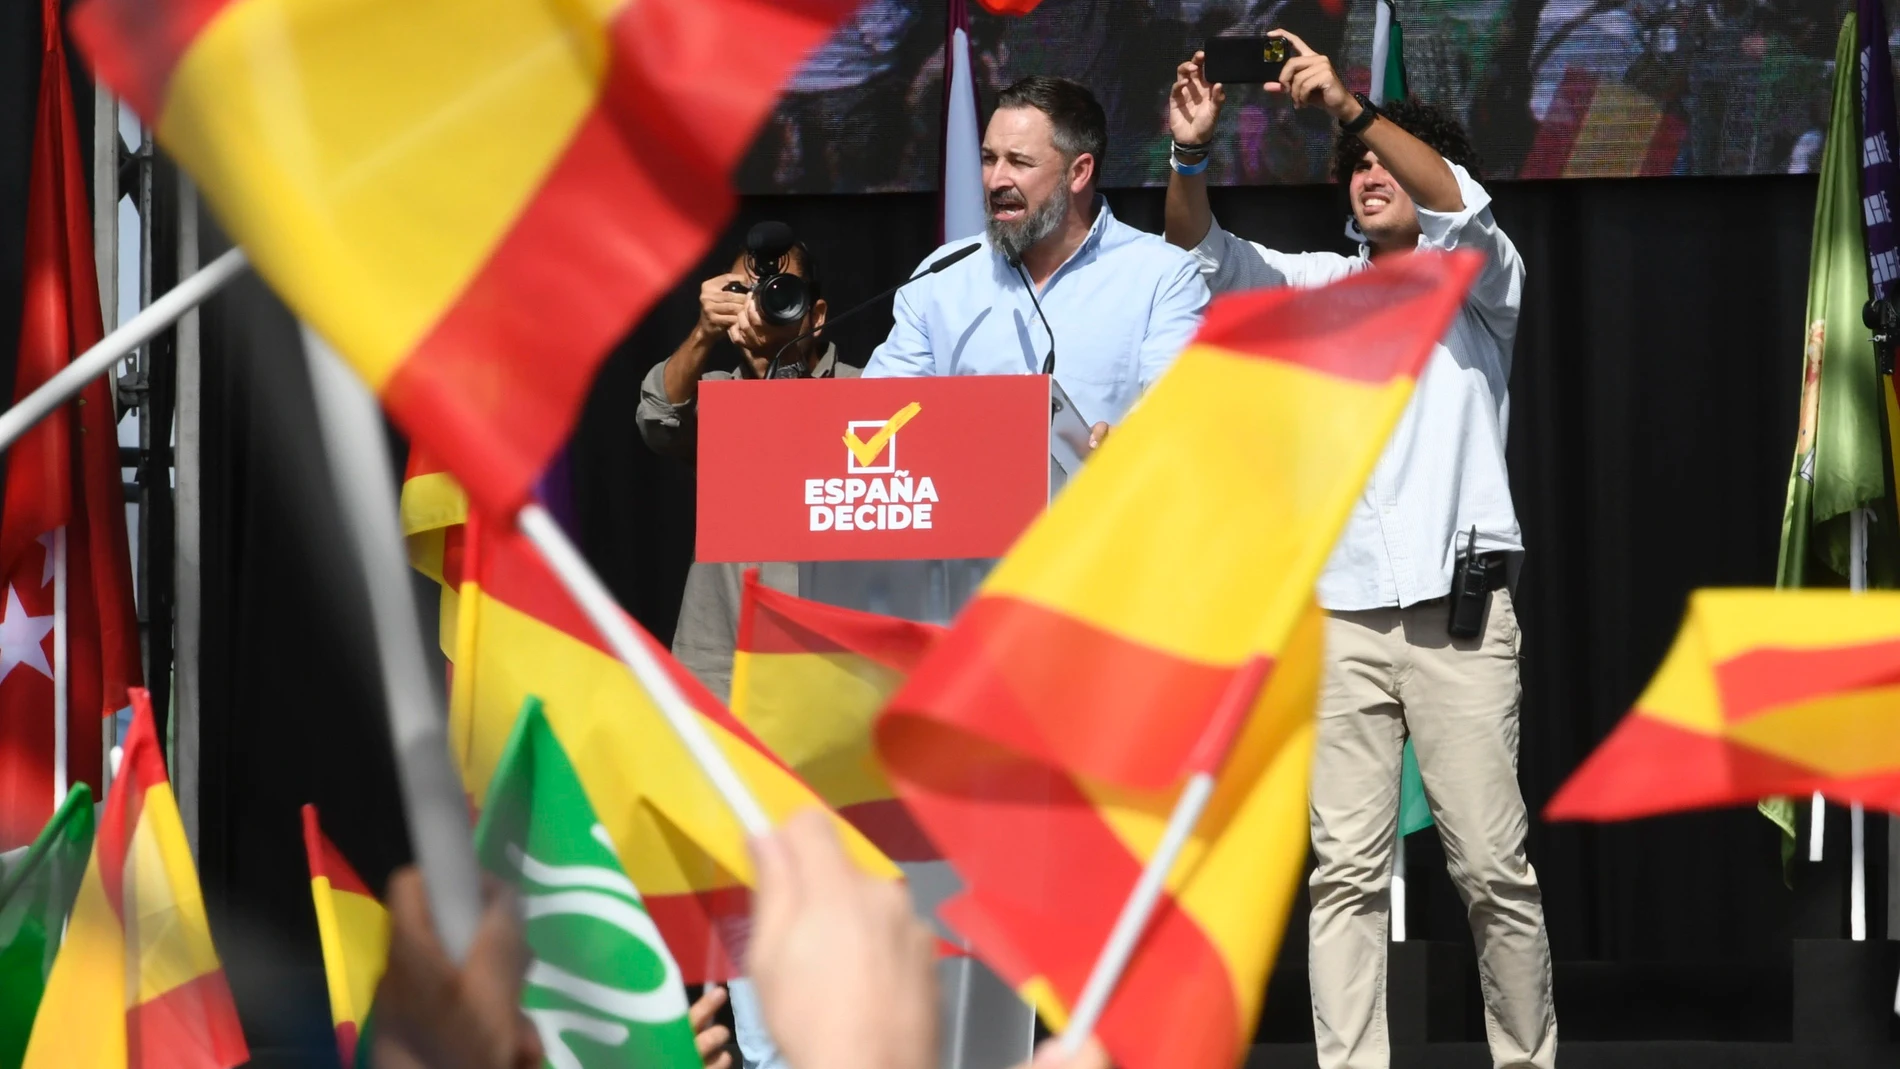 El que presidente de Vox, Santiago Abascal, presenta el documento "España decide" con motivo de la fiesta del partido, Viva 22, en Madrid, este domingo.